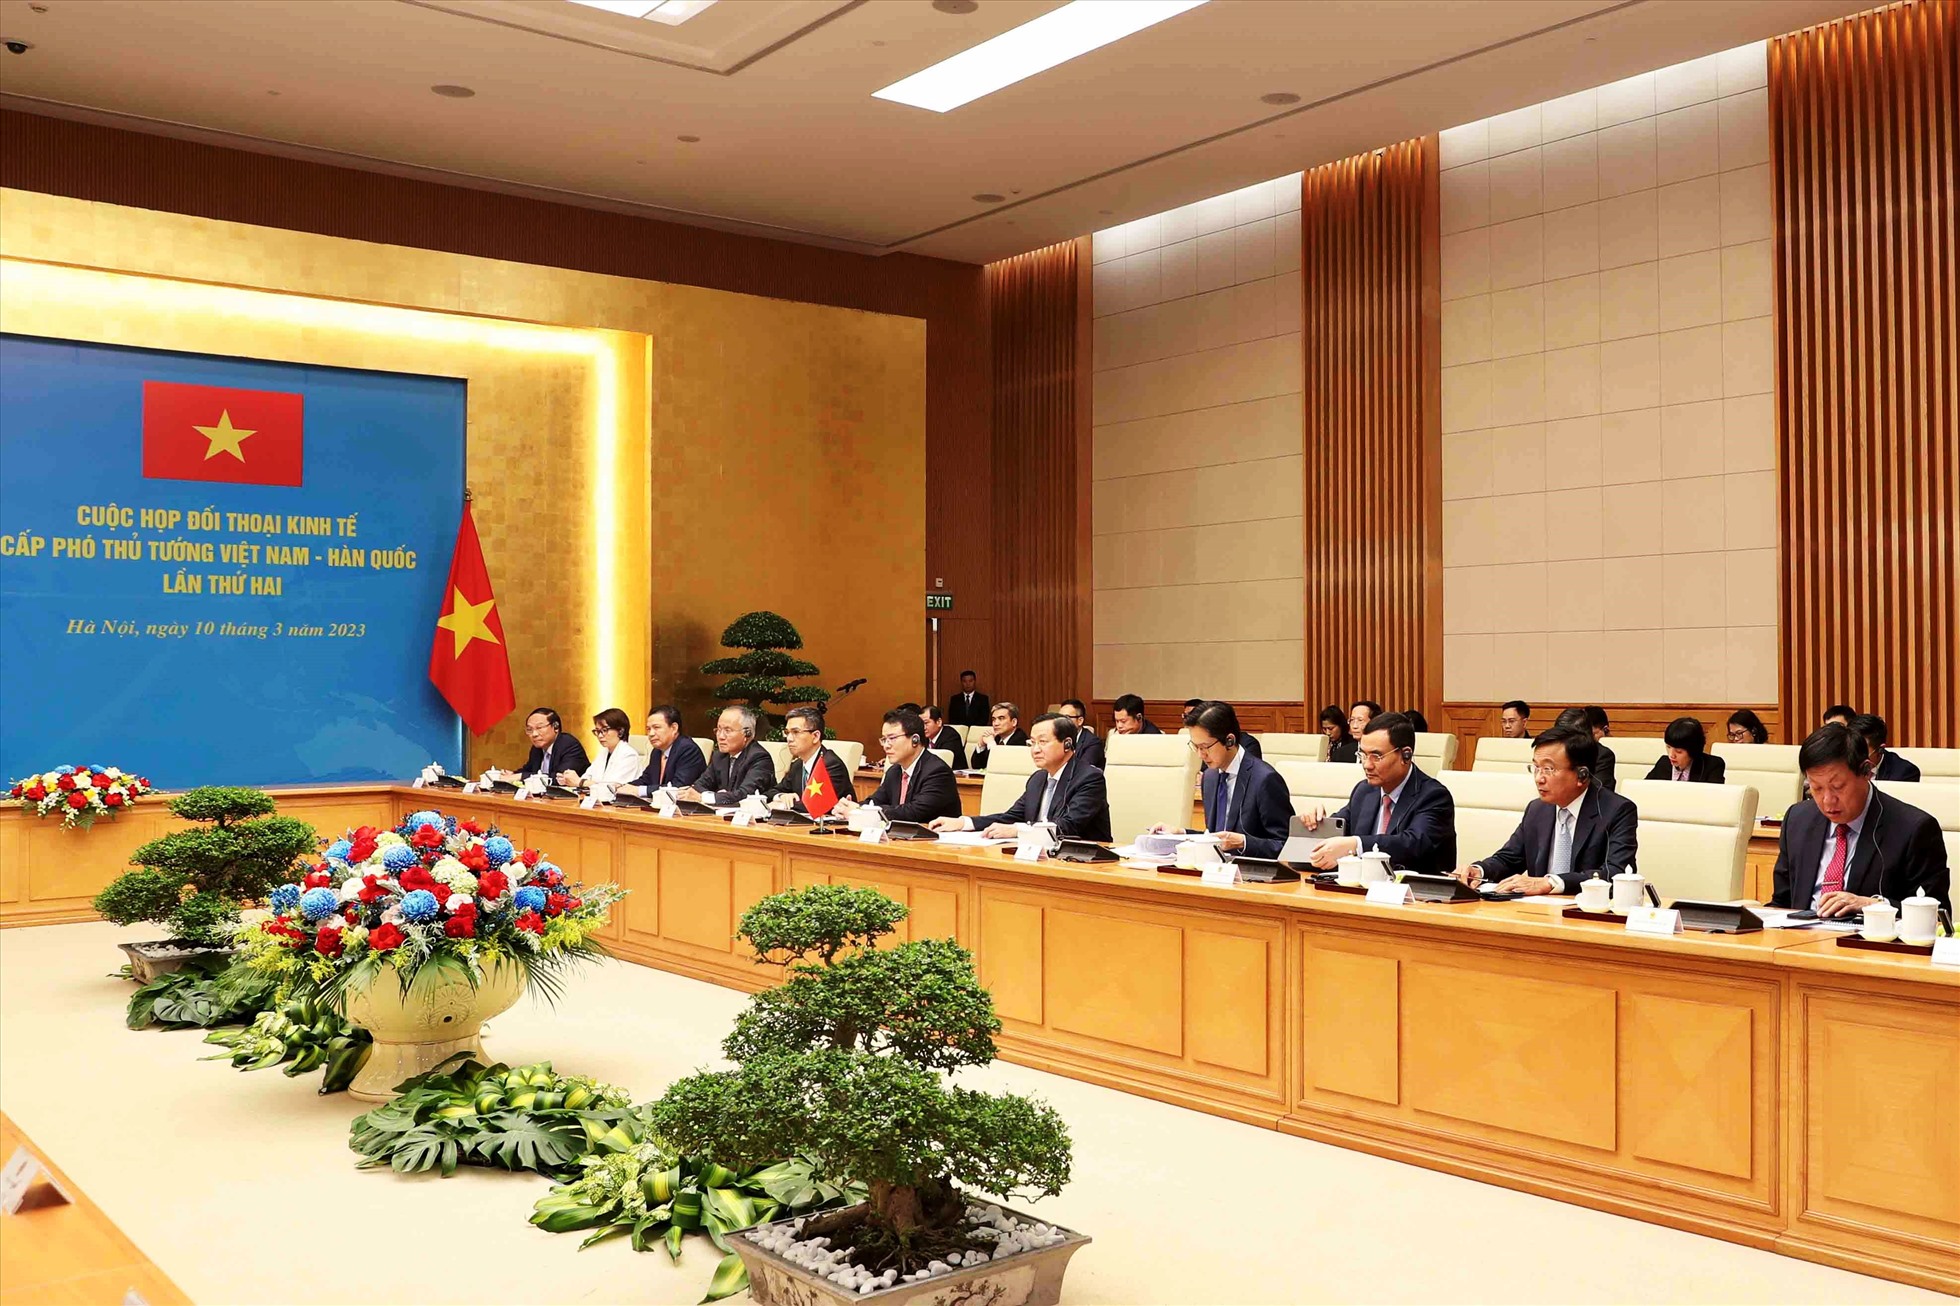 Đối thoại kinh tế cấp Phó Thủ tướng Việt Nam - Hàn Quốc lần thứ hai được tổ chức tại Hà Nội ngày 10.3.2023. Ảnh: Trâm Trâm